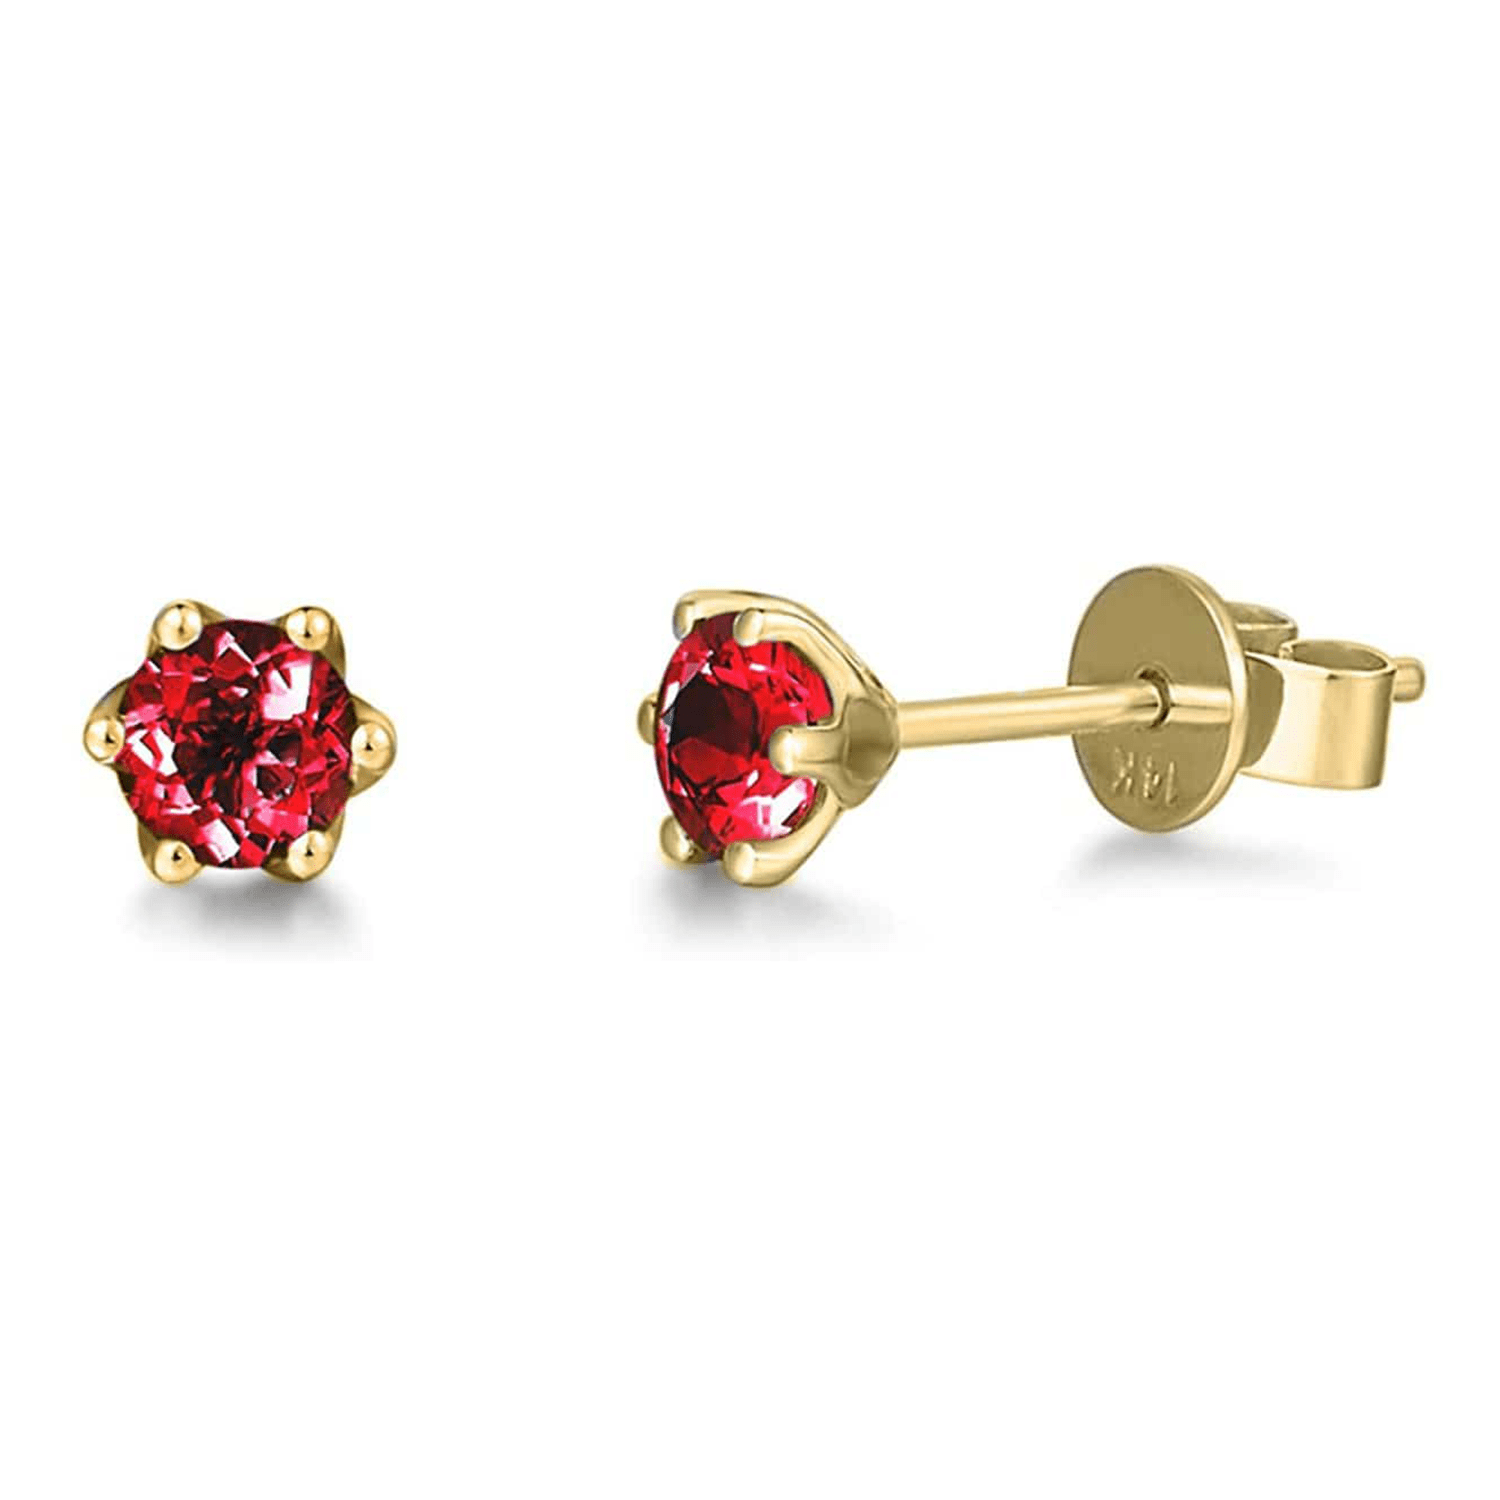 Red garnet gemstone earrings in 14k gold